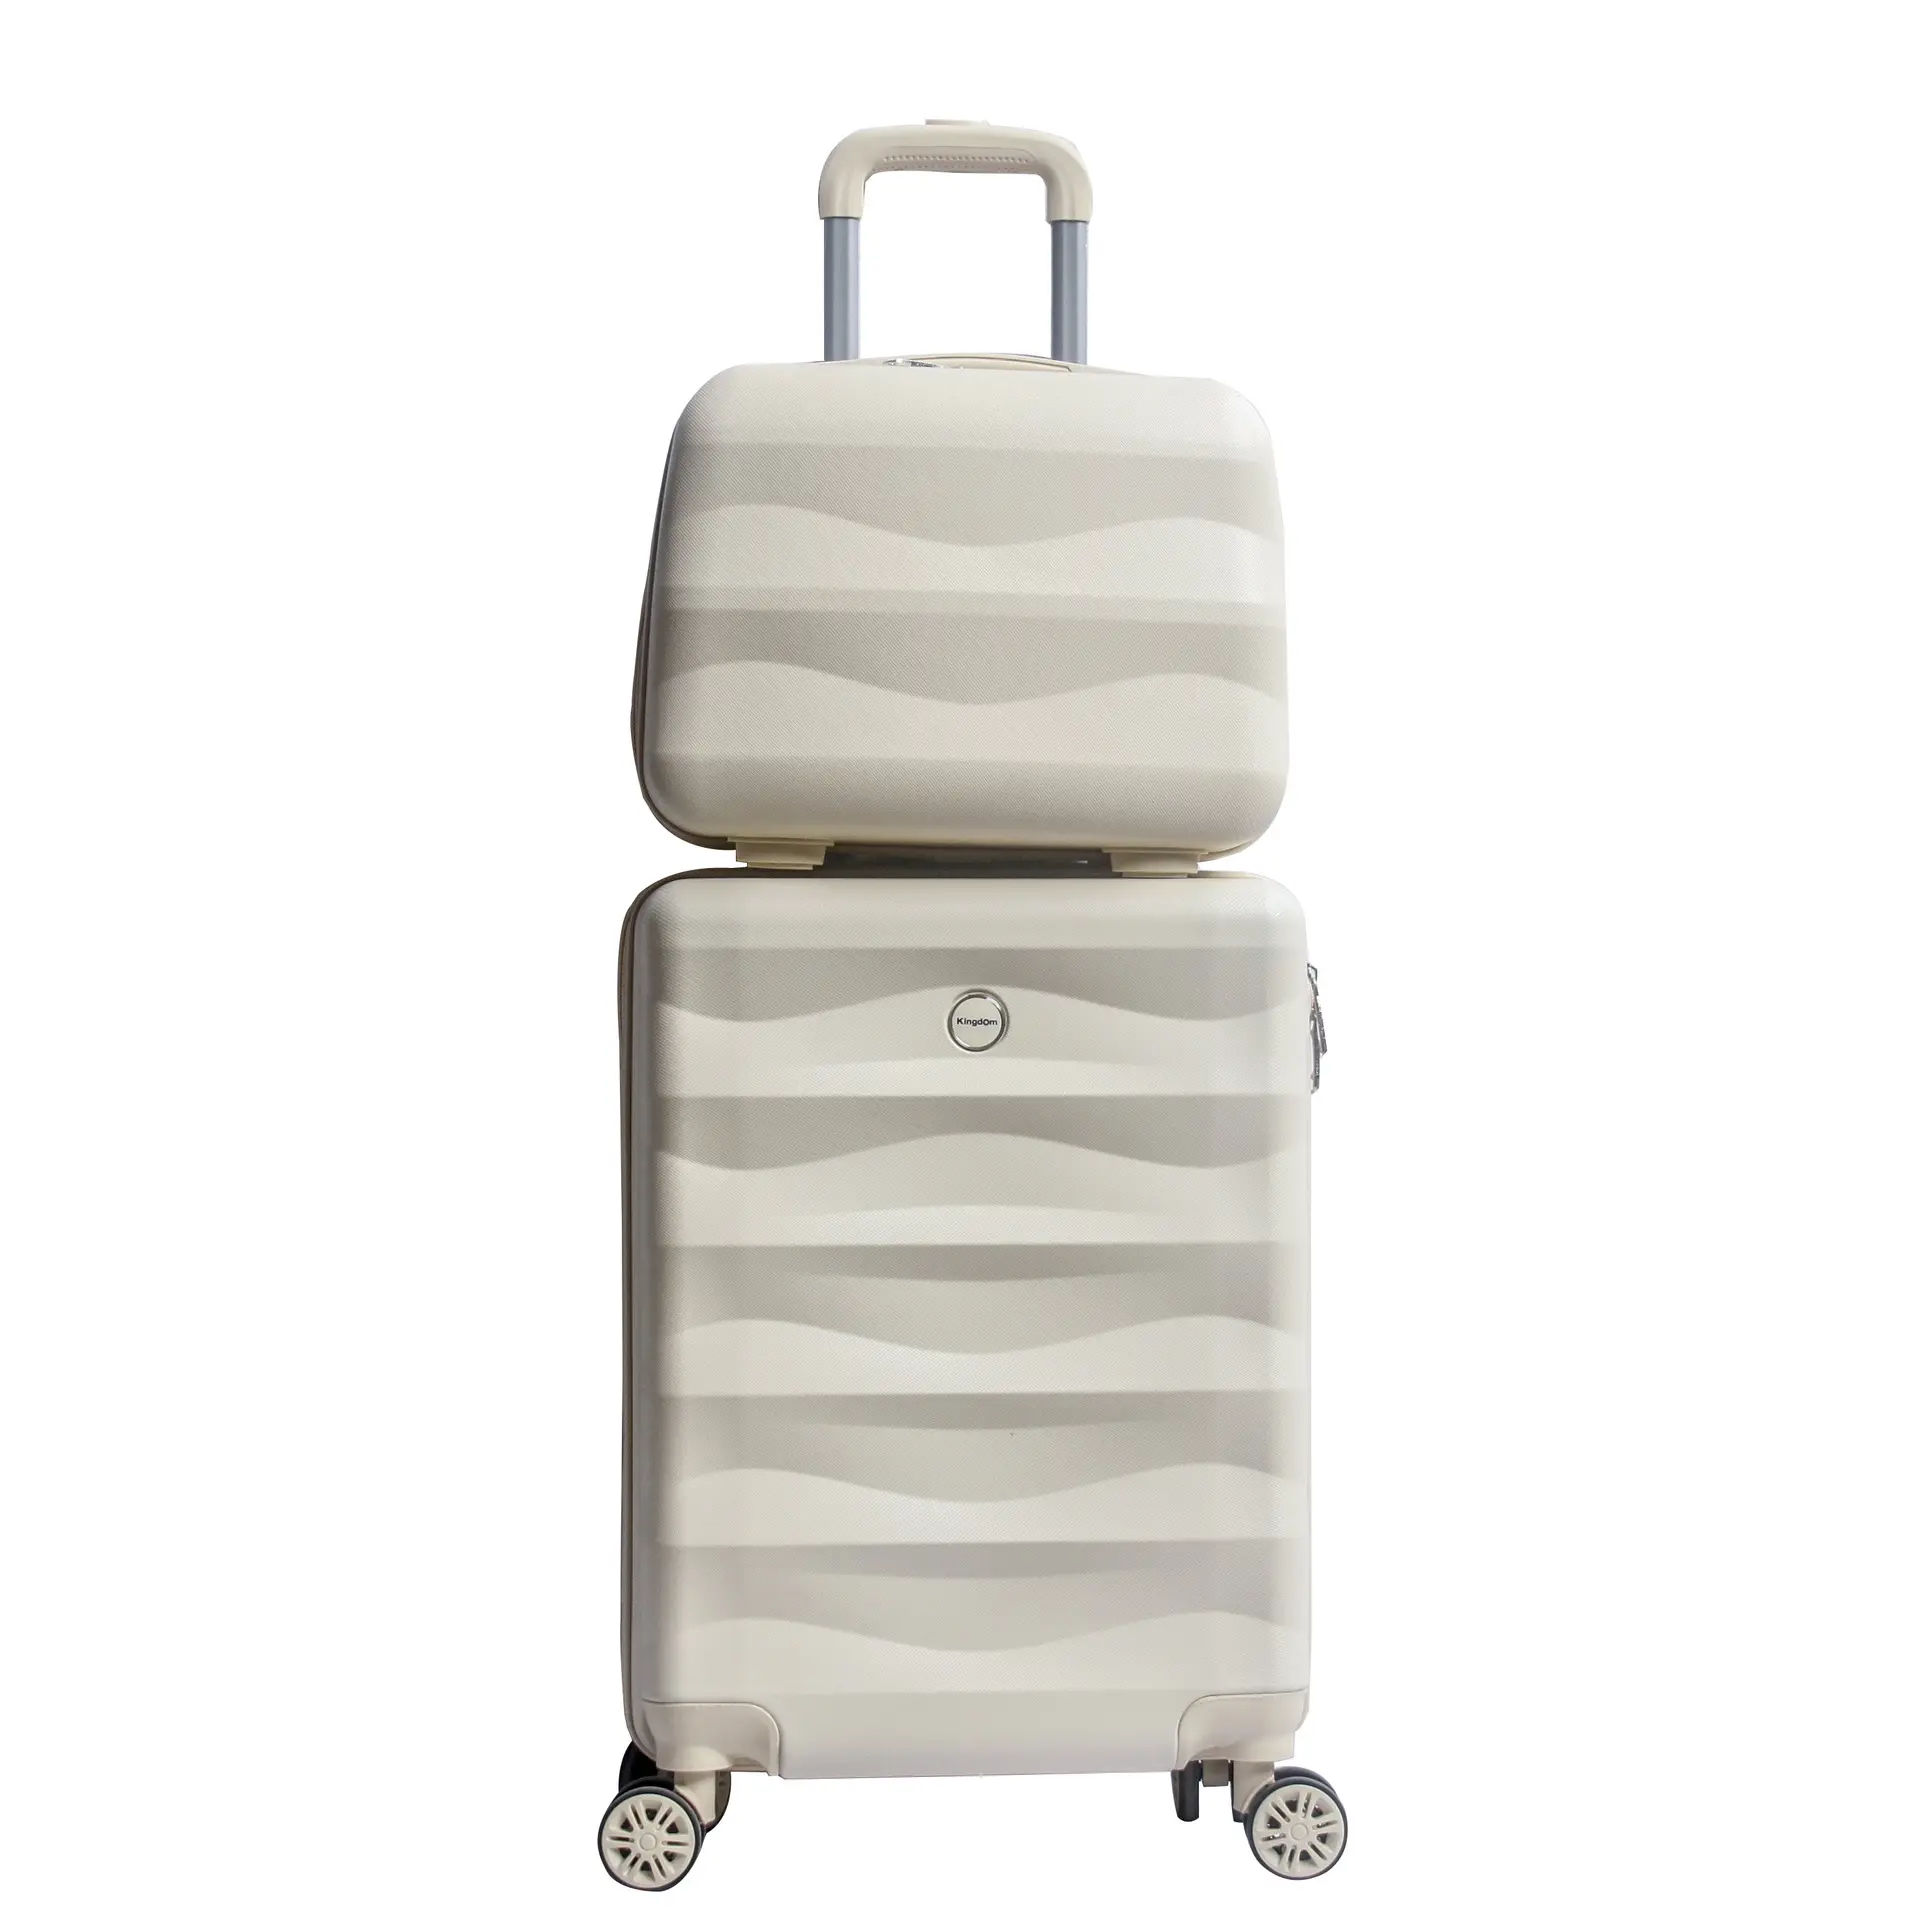 उच्च गुणवत्ता वाले व्यवसाय सामान ट्रॉली कस्टम लॉक यात्रा सूटकेस पहियों के साथ सामान सेट